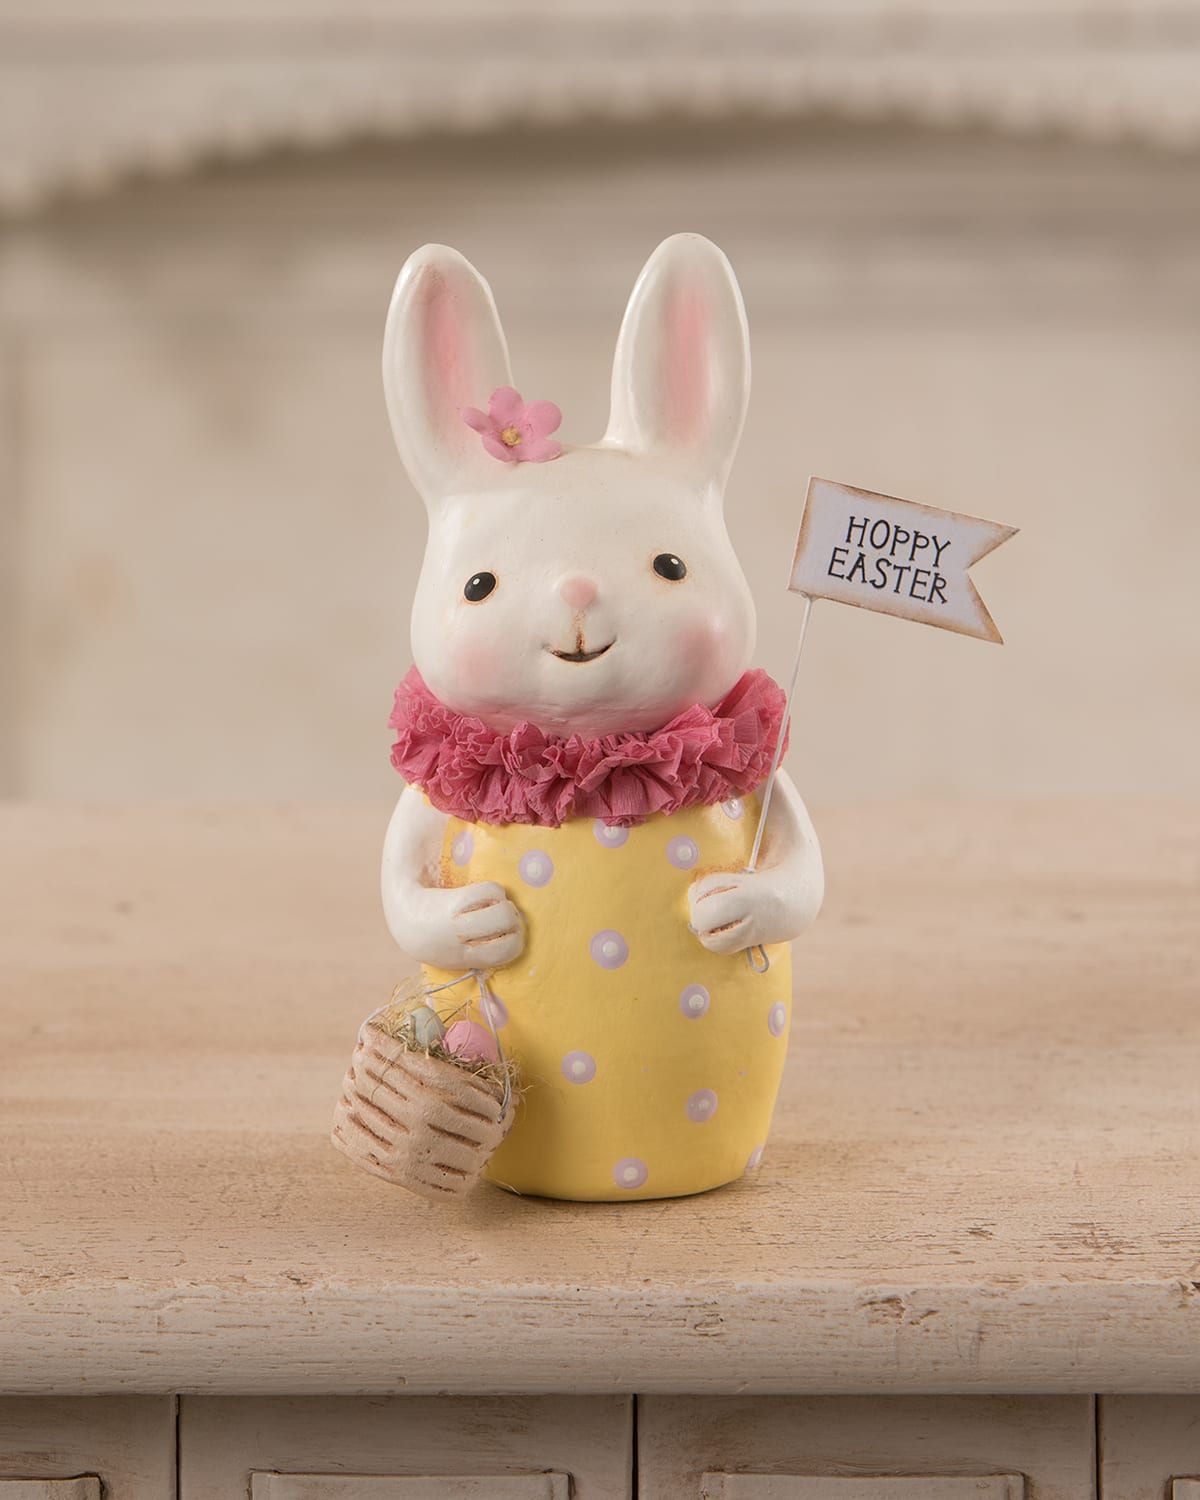 Hoppy Easter Bunny, 5.8"T